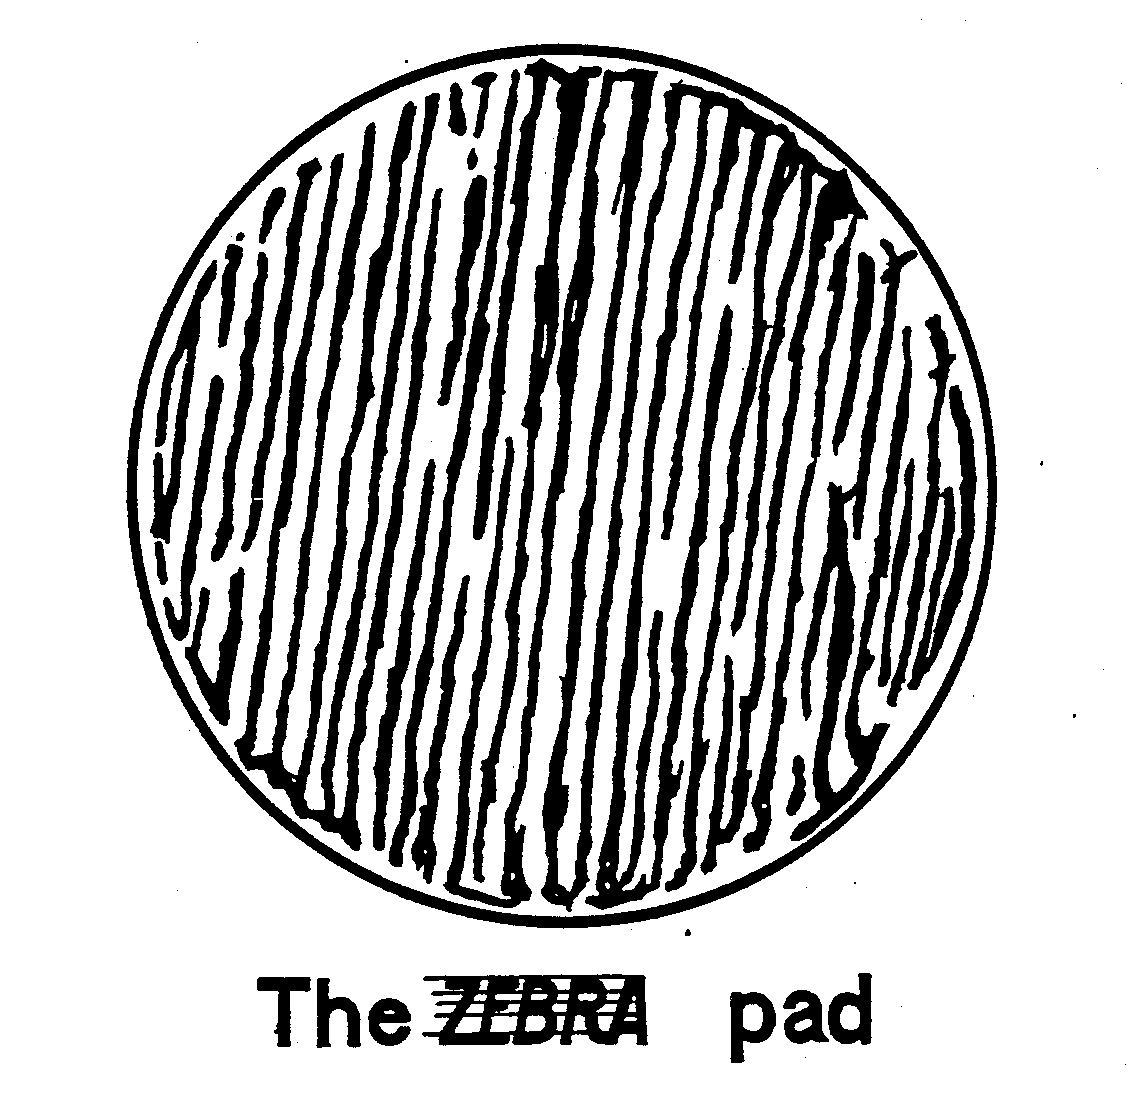  THE ZEBRA PAD